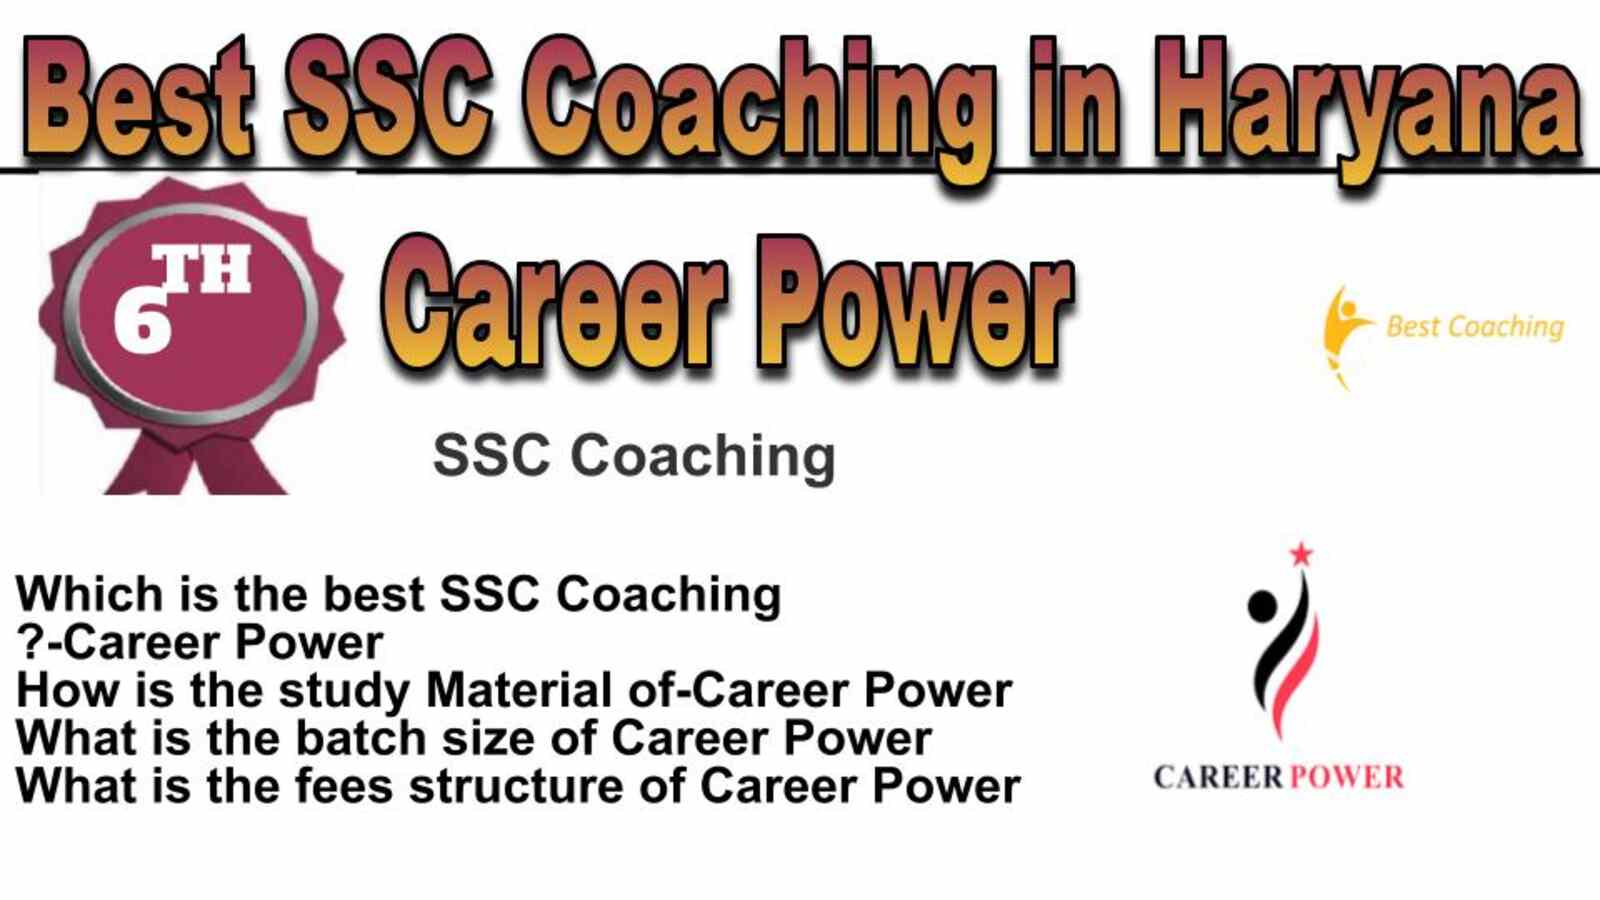 Rank 6 best SSC coaching in Haryana